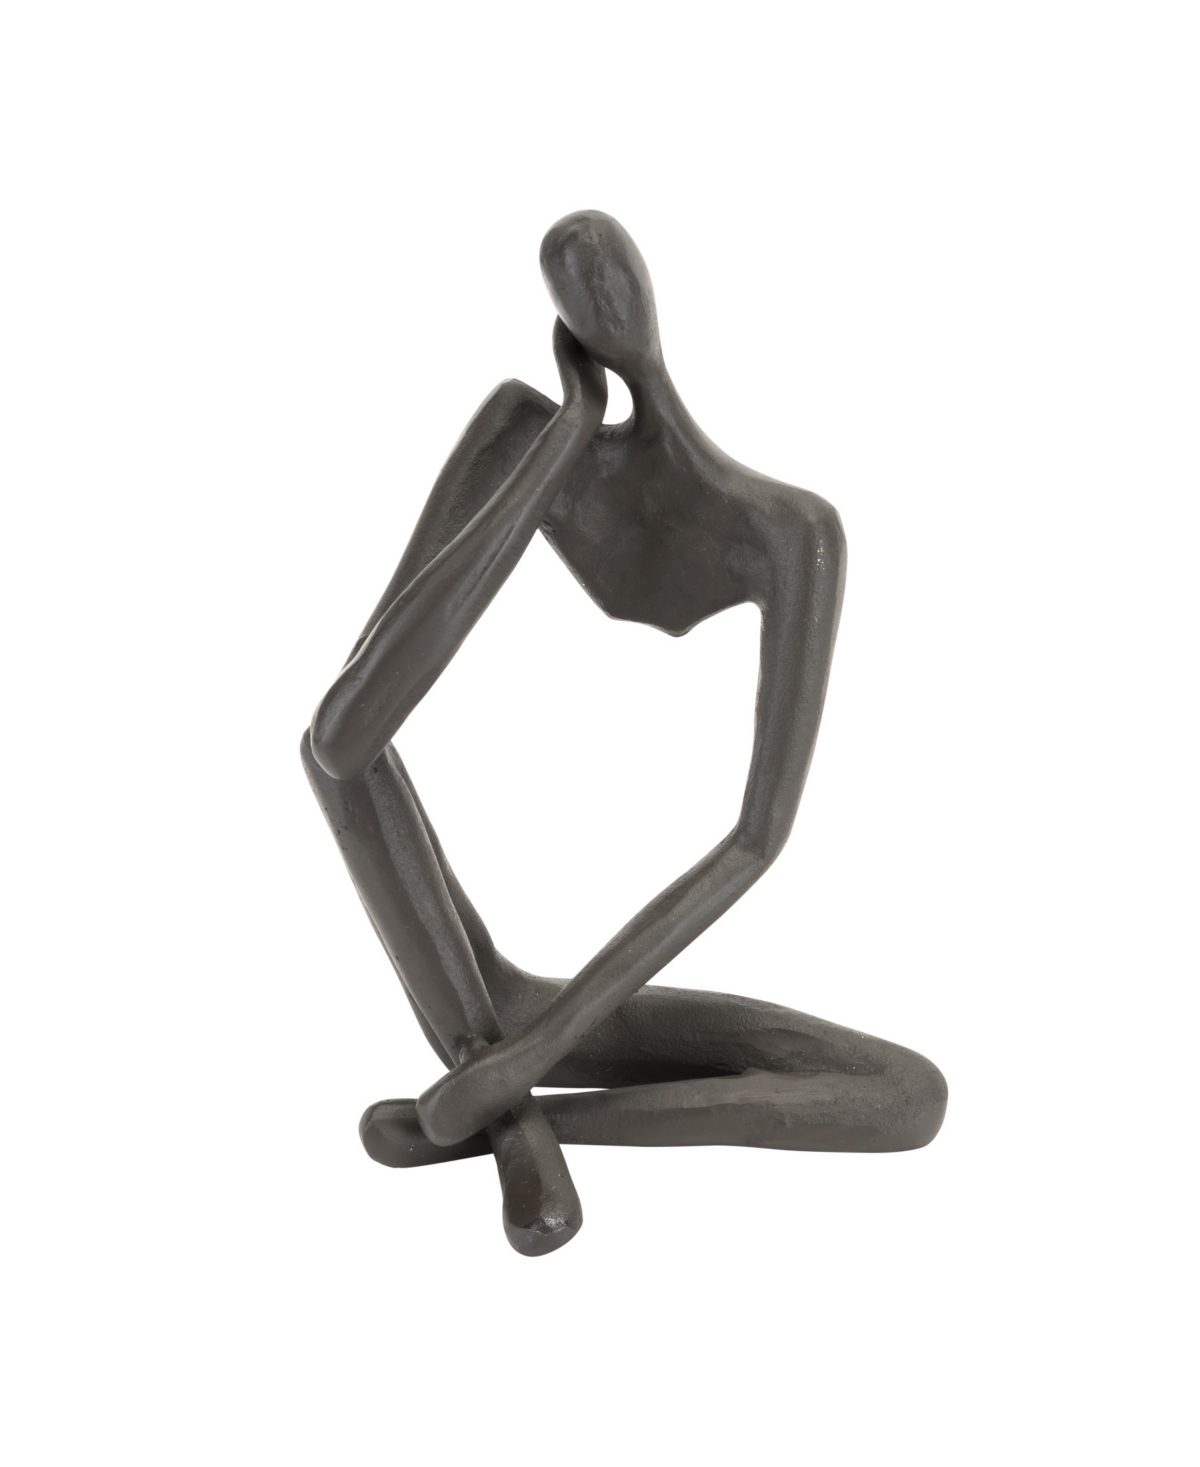 Danya B Modern Thinking Man Iron Sculpture In Dark Brown